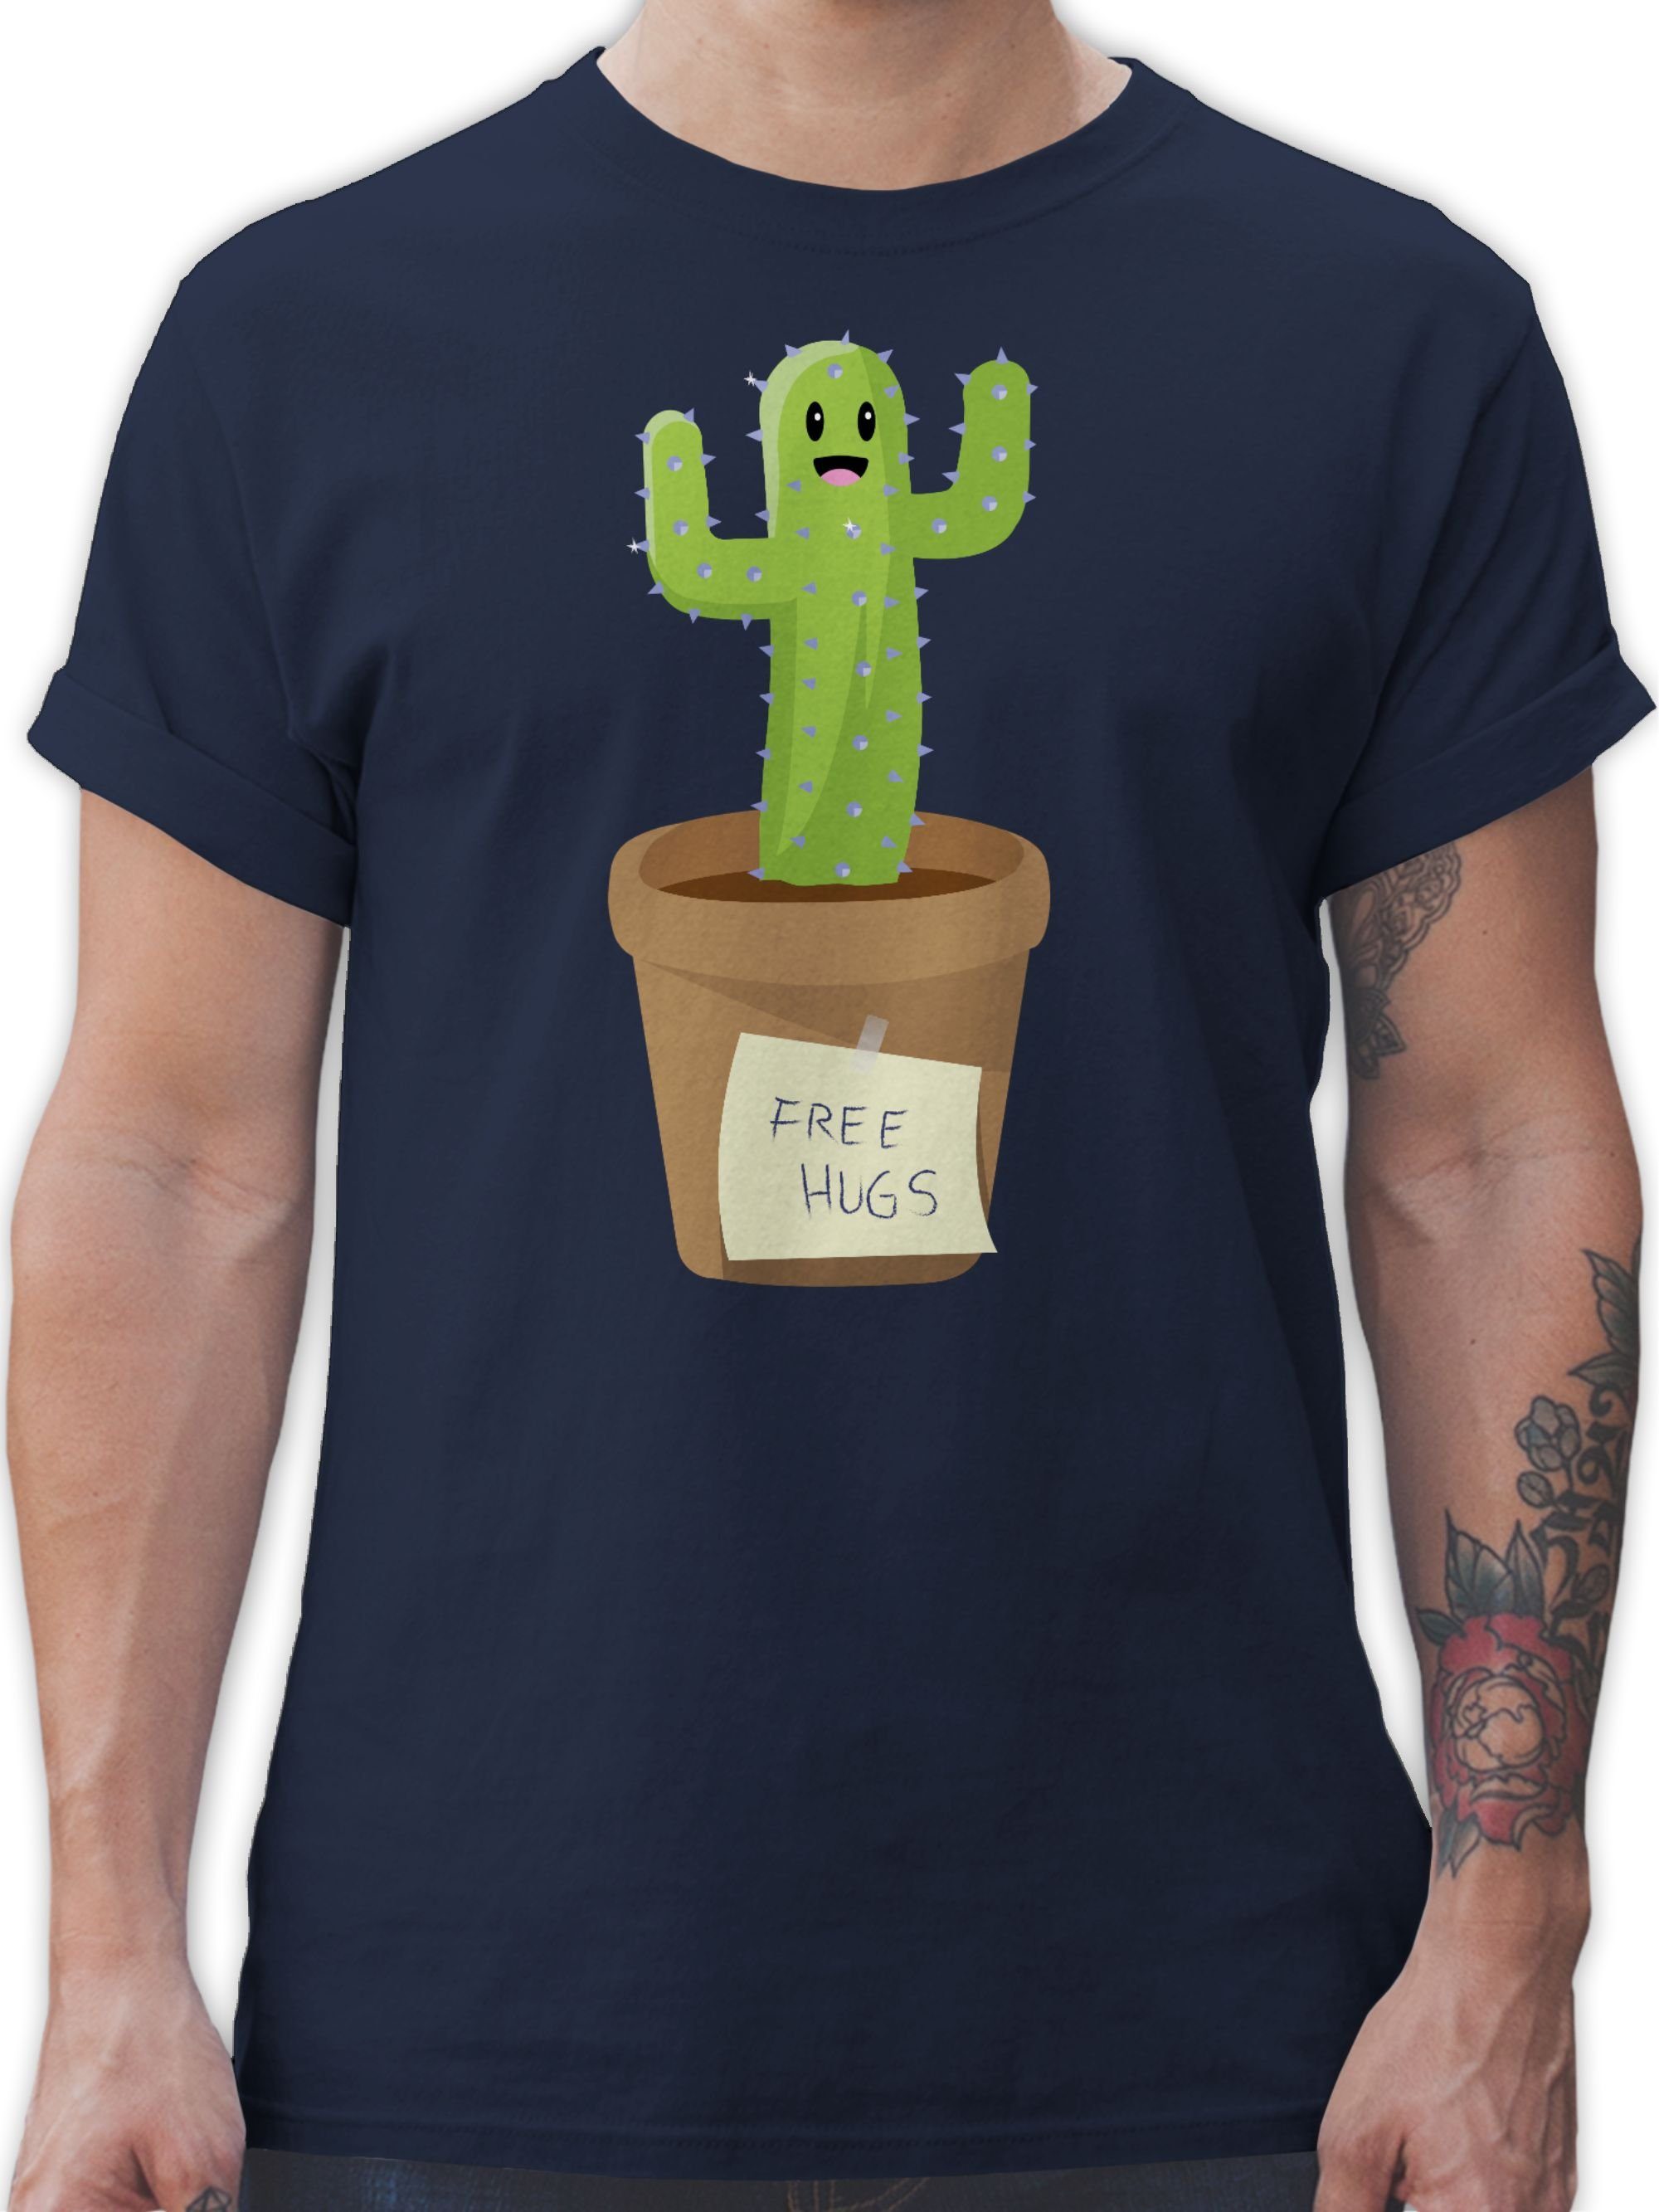 Shirtracer T-Shirt Free Hugs Kaktus Sprüche Statement 03 Navy Blau